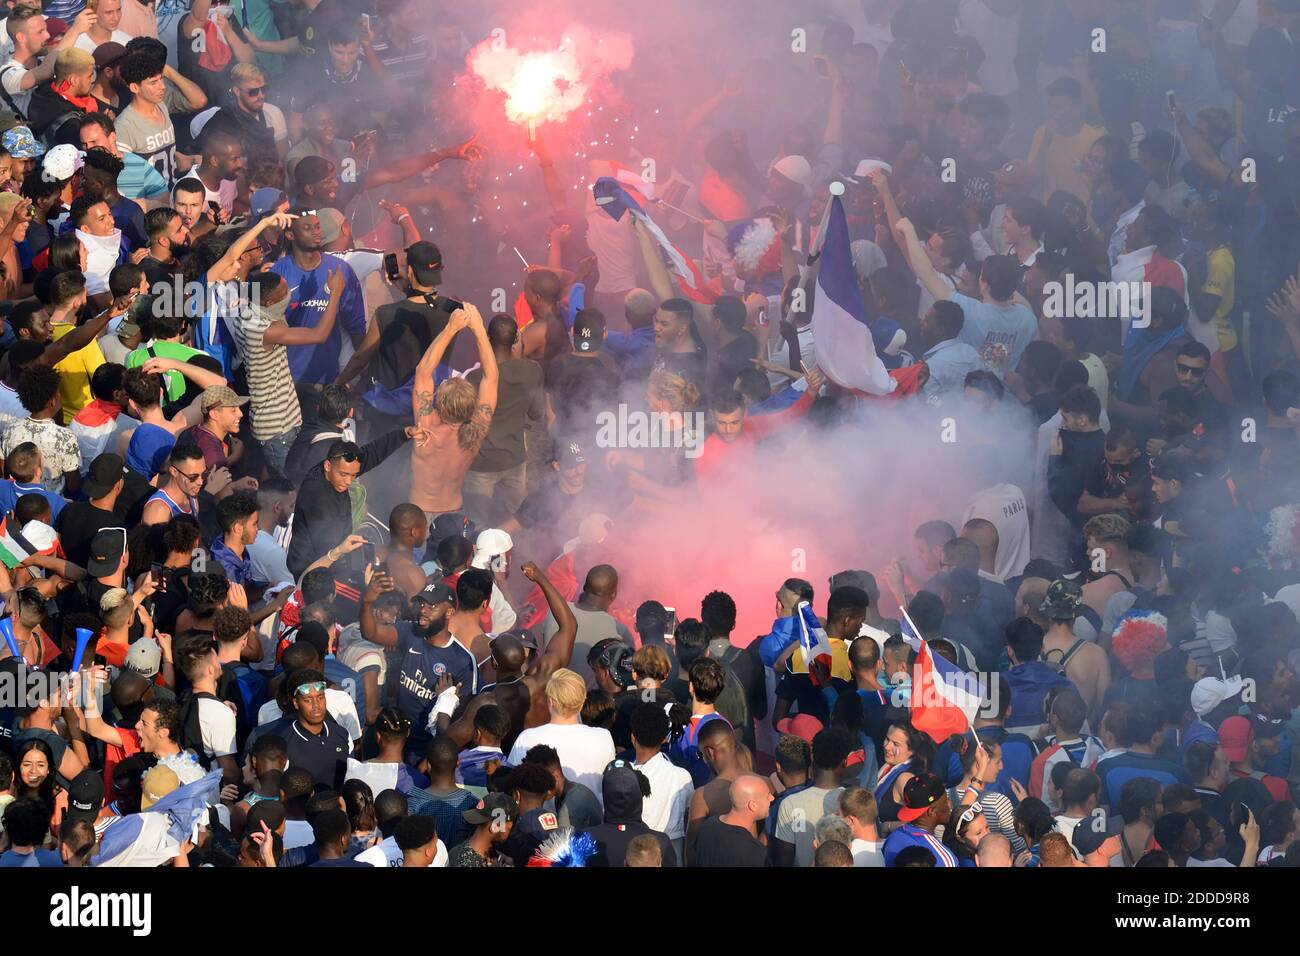 La gente festeggia sul viale degli Champs Elysees dopo la finale della Coppa del mondo di calcio russia 2018 tra Francia e Croazia a Parigi, Francia, il 15 luglio 2018. Foto di Aurore Marechal/ABACAPRESS.COM Foto Stock